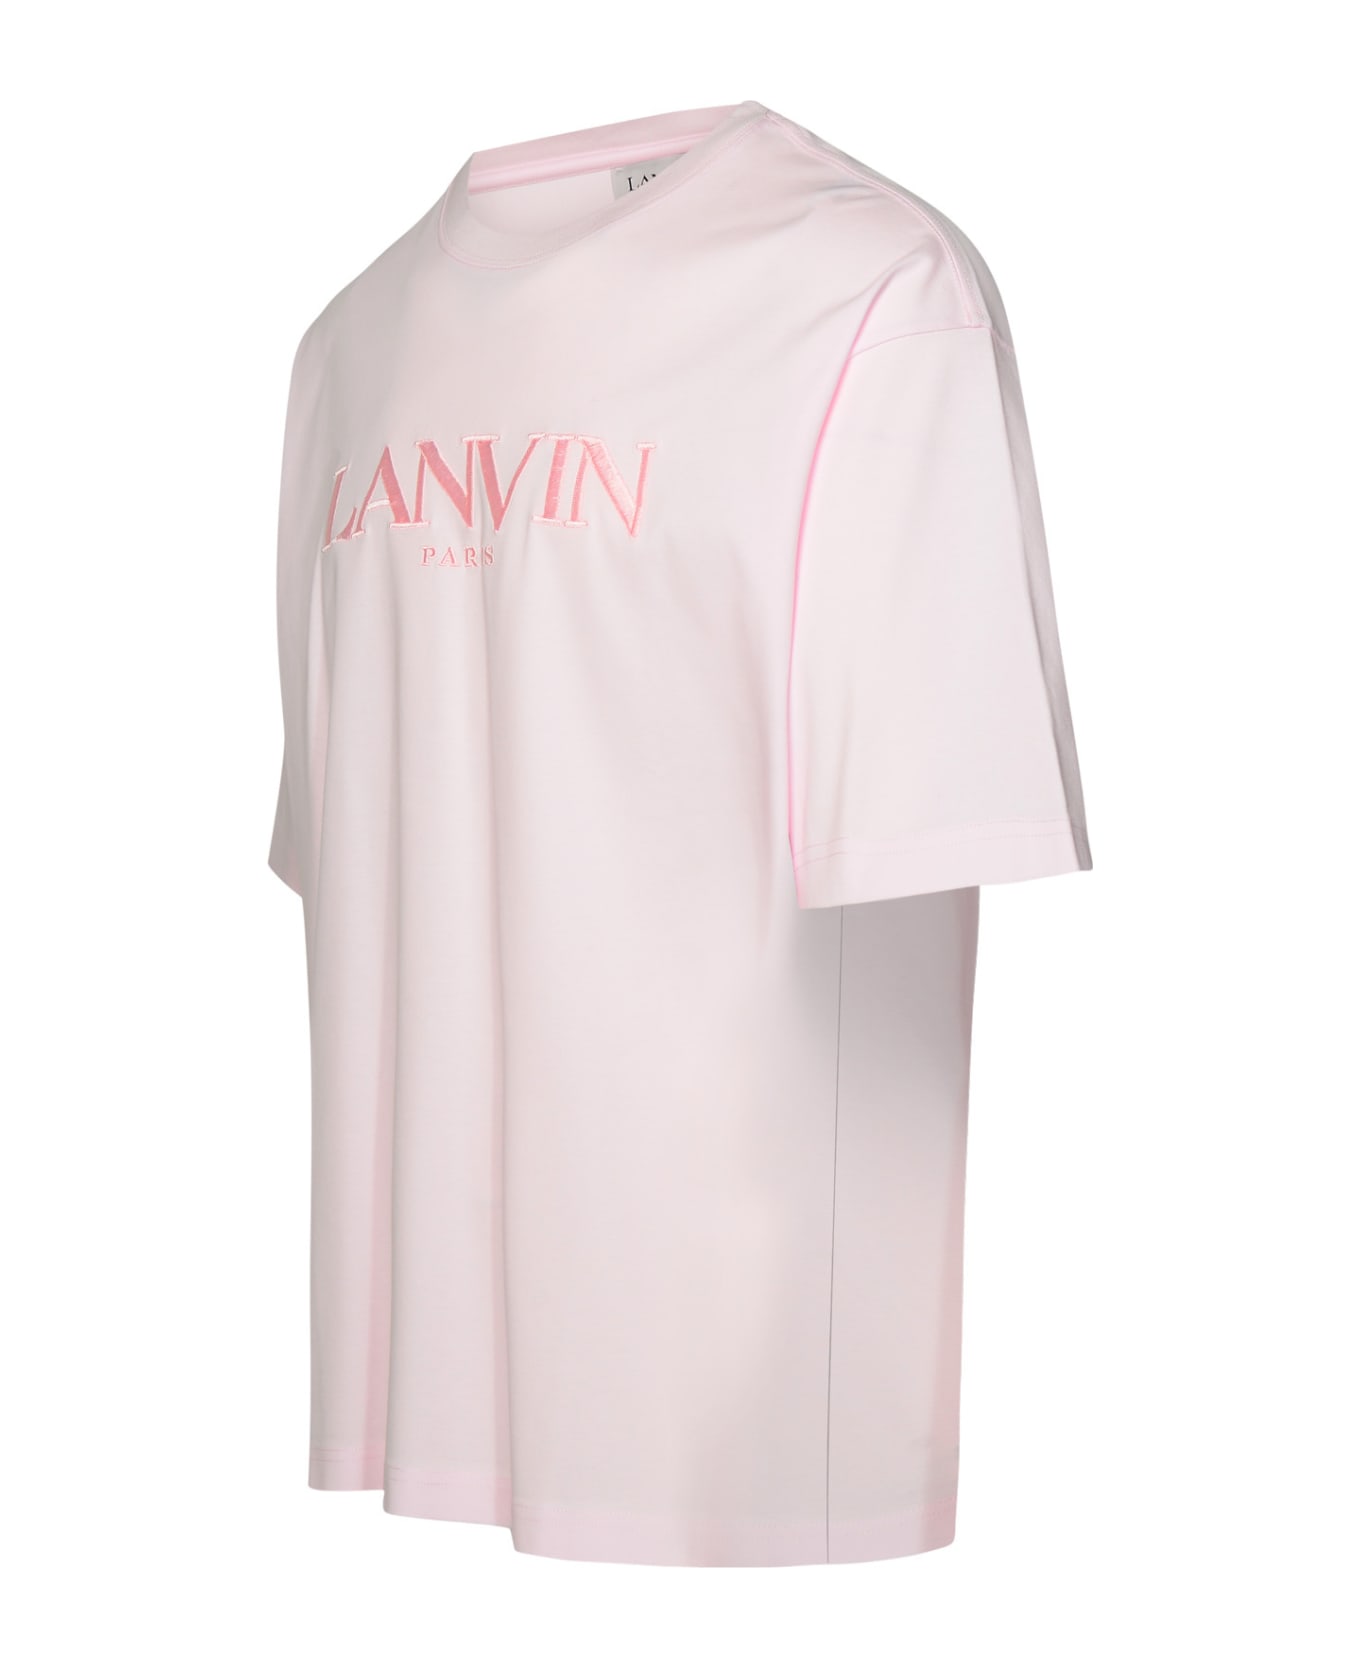 Lanvin Pink Cotton T-shirt - Pink